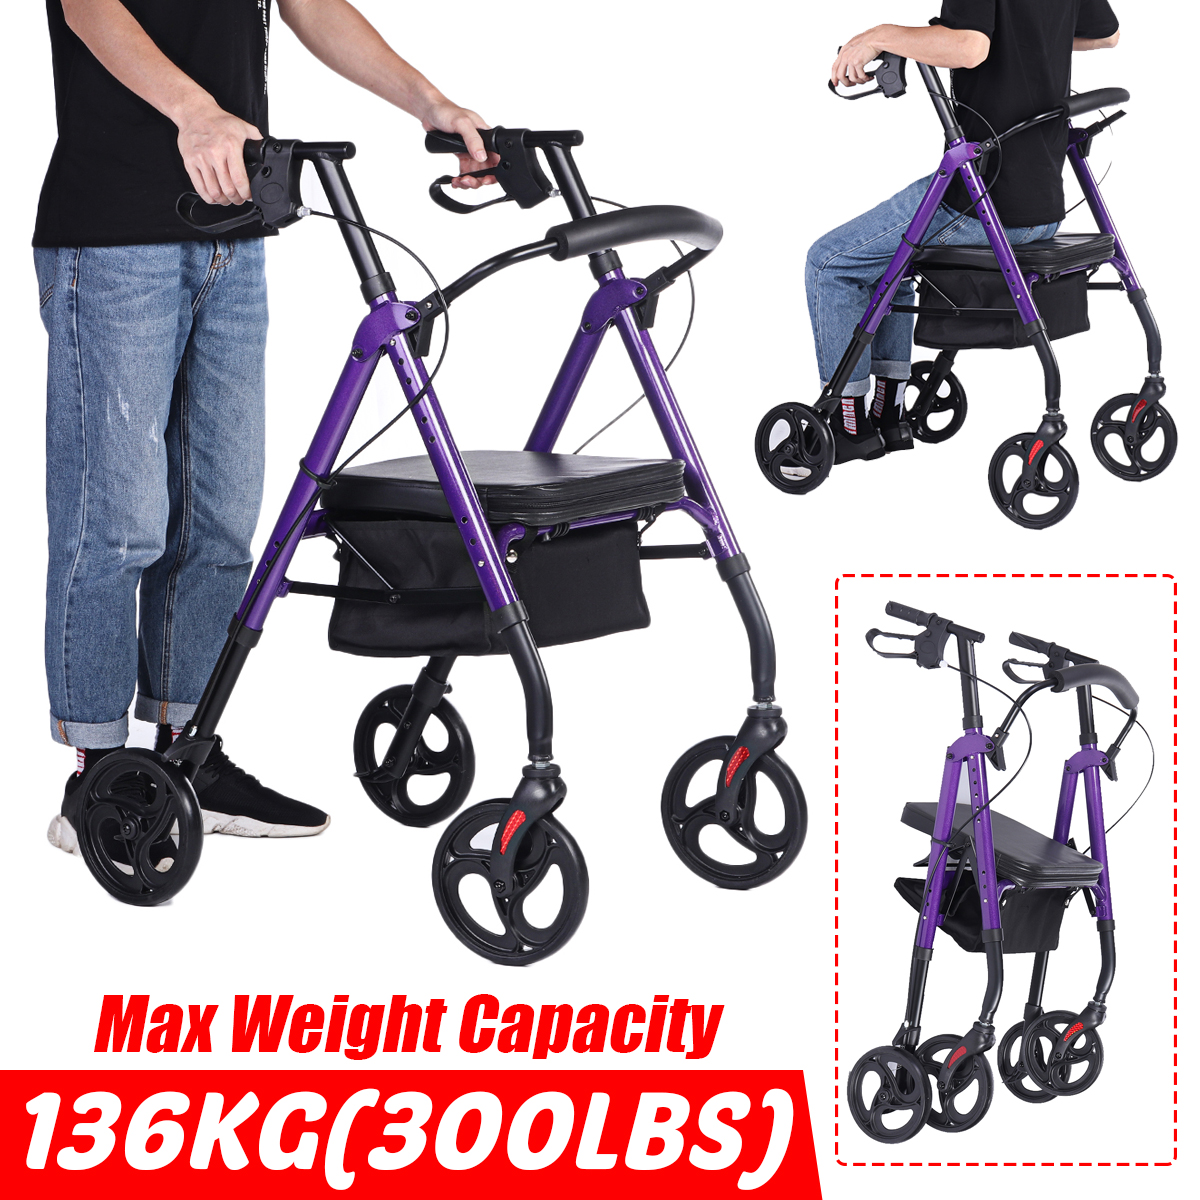 4-Wheel-Seat-Rolling-Walker-Chair-Rollator-Foldable-Adjustable-Elderly-Aid-Basket-Backrest-1940430-2